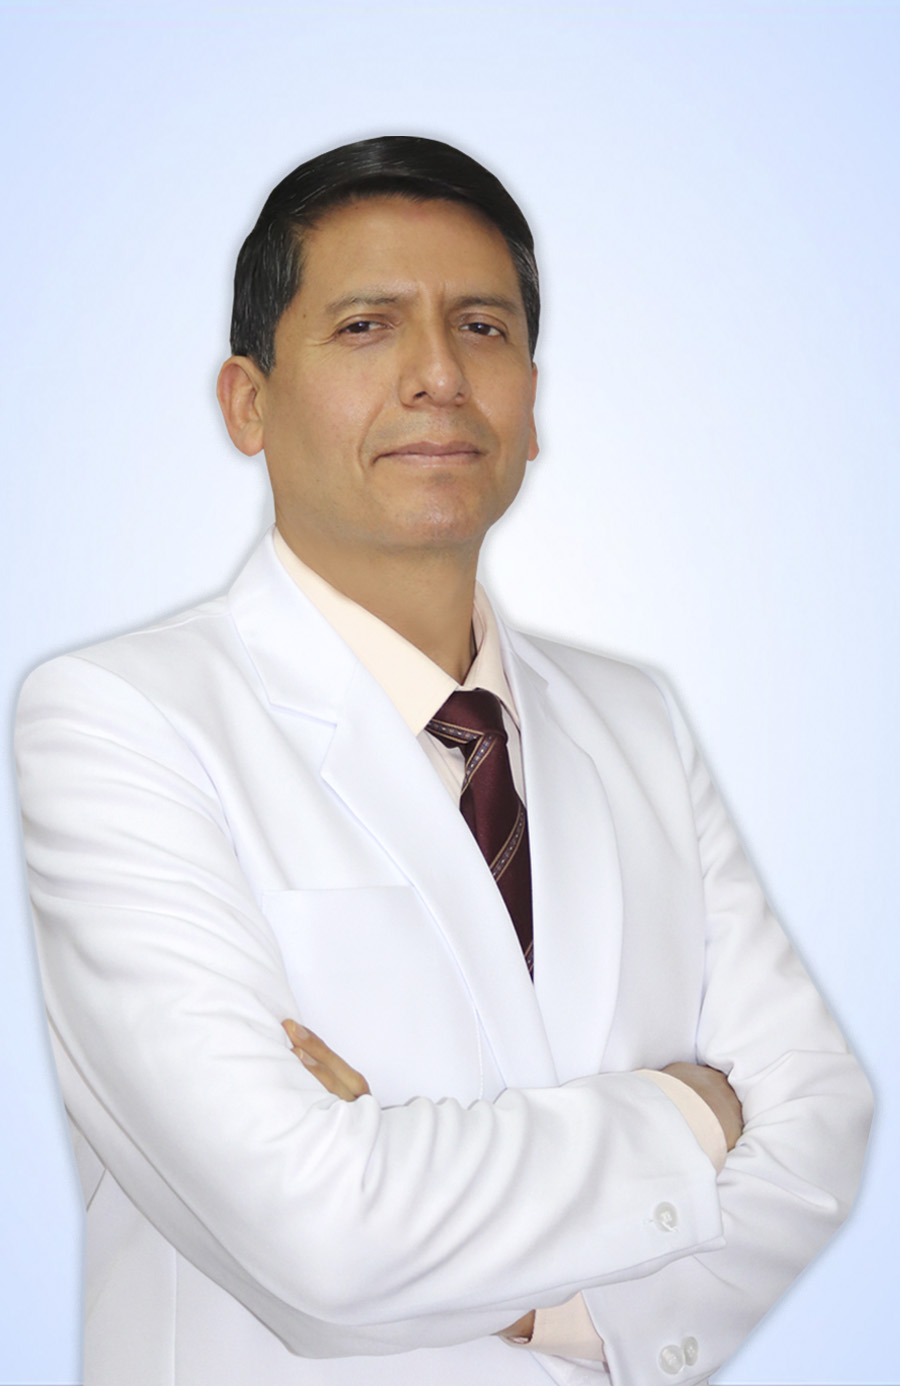 DR. GALLEGOS